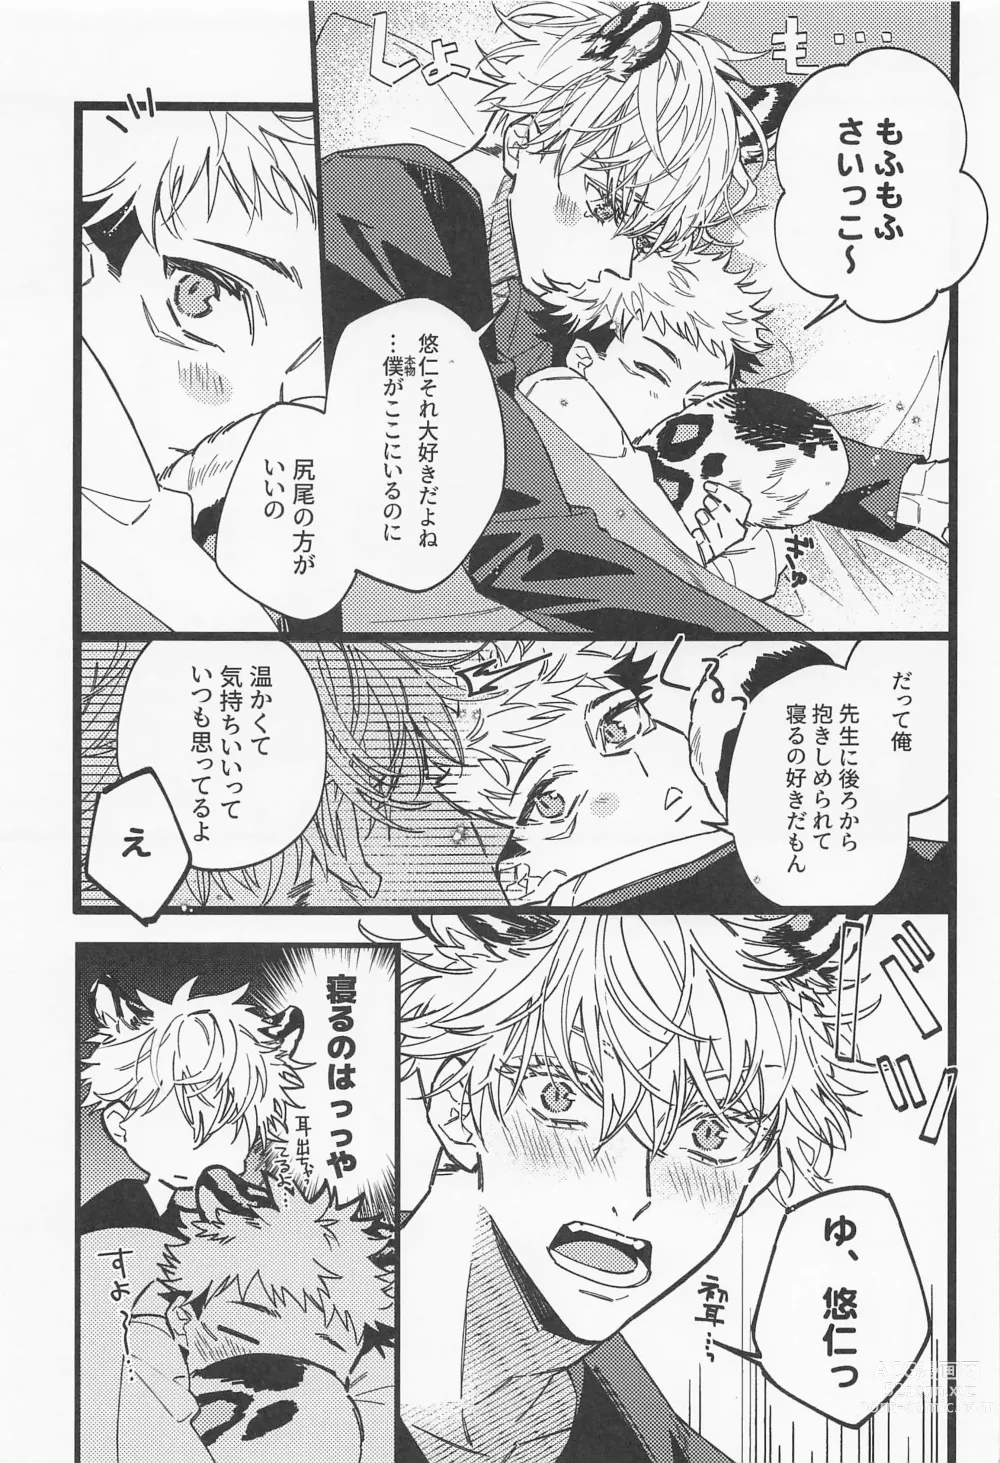 Page 22 of doujinshi Fukashin Ryouiki